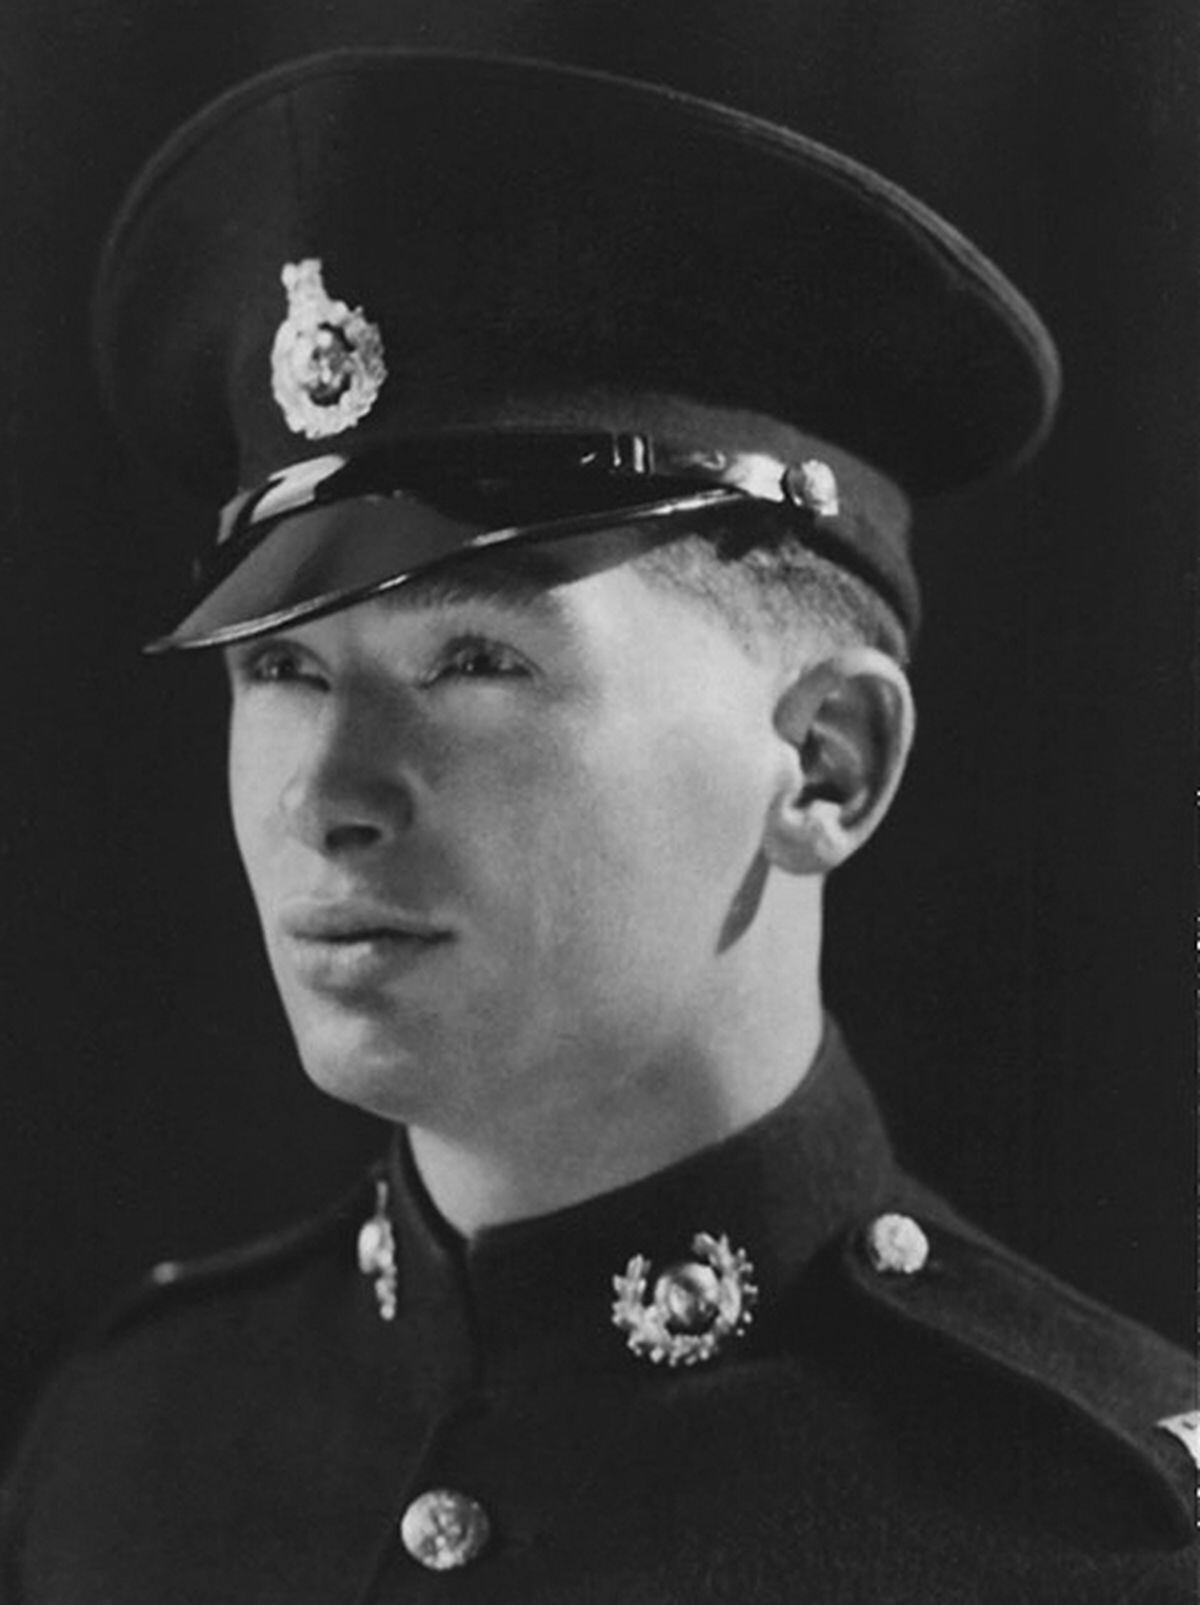 Royal Marine Roy in uniform.